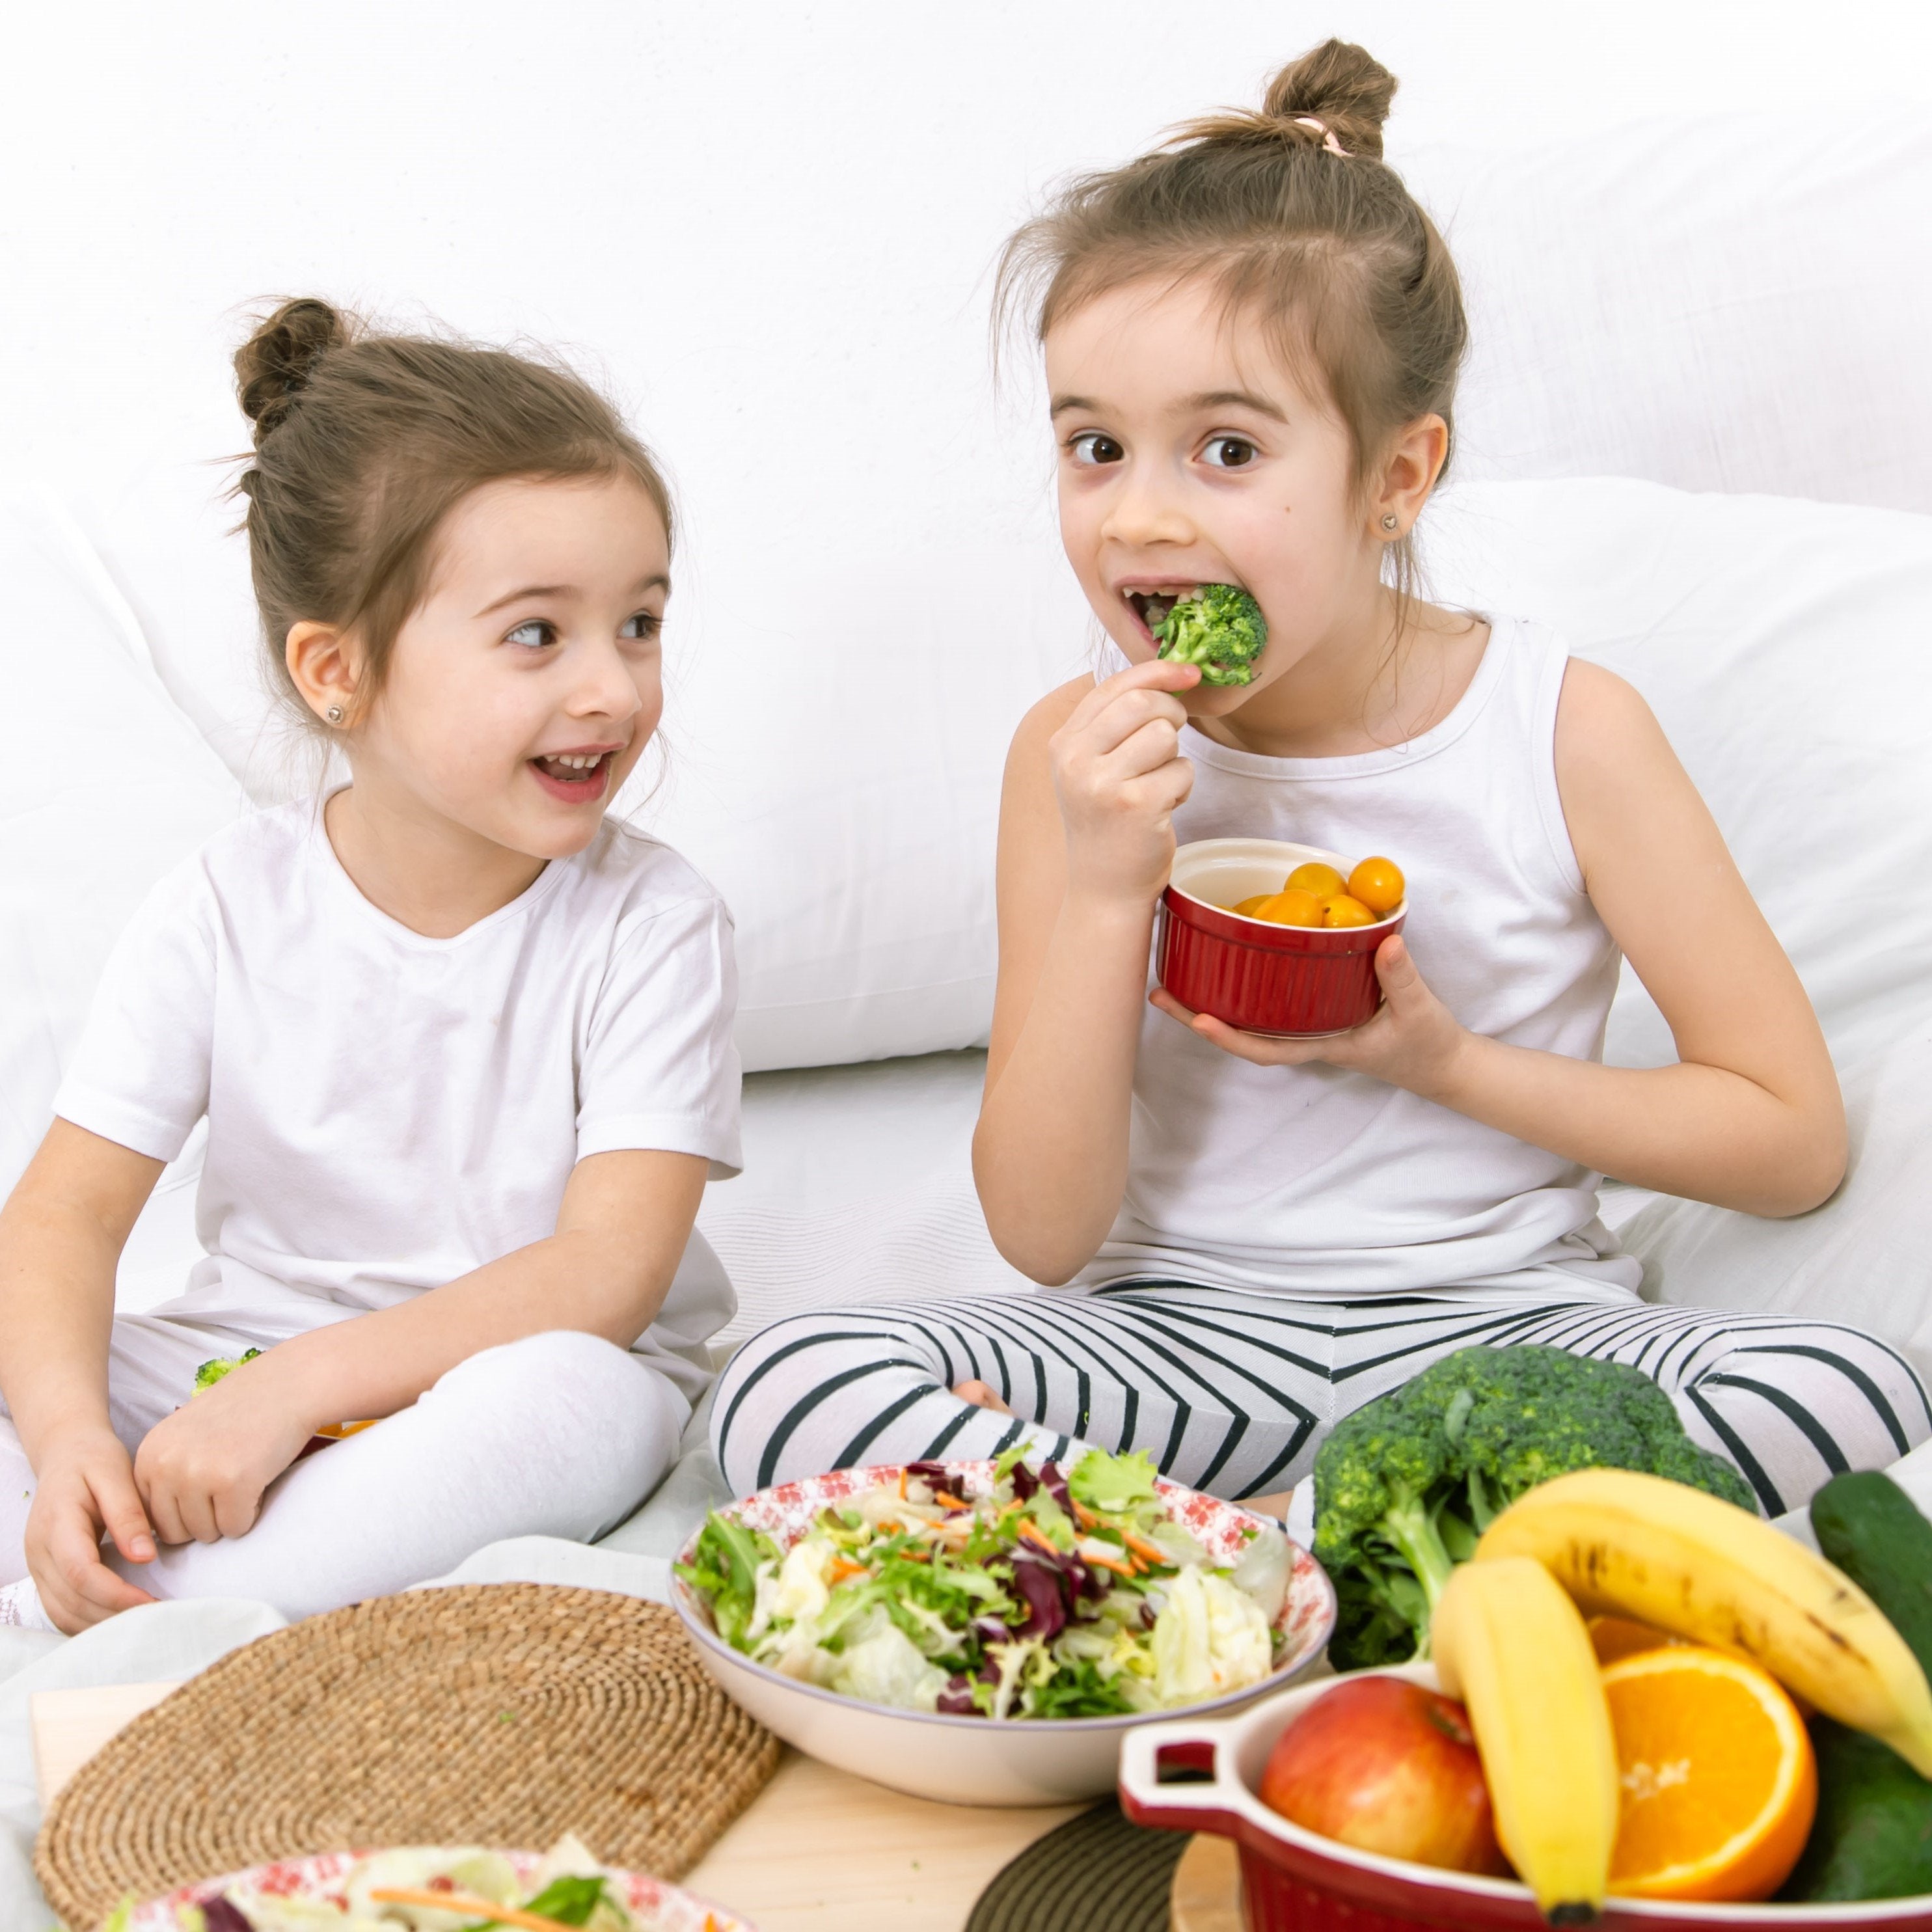 Правильное питание картинки для детей. Семья ест здоровую пищу. Приучайте ребенка к правильному питанию. Семья ест фрукты и овощи.